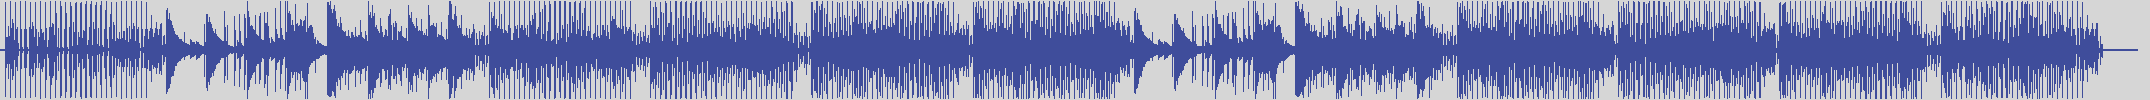 noclouds_chillout [NOC117] Roger Vena - Introduce [Basementhal Mix] audio wave form